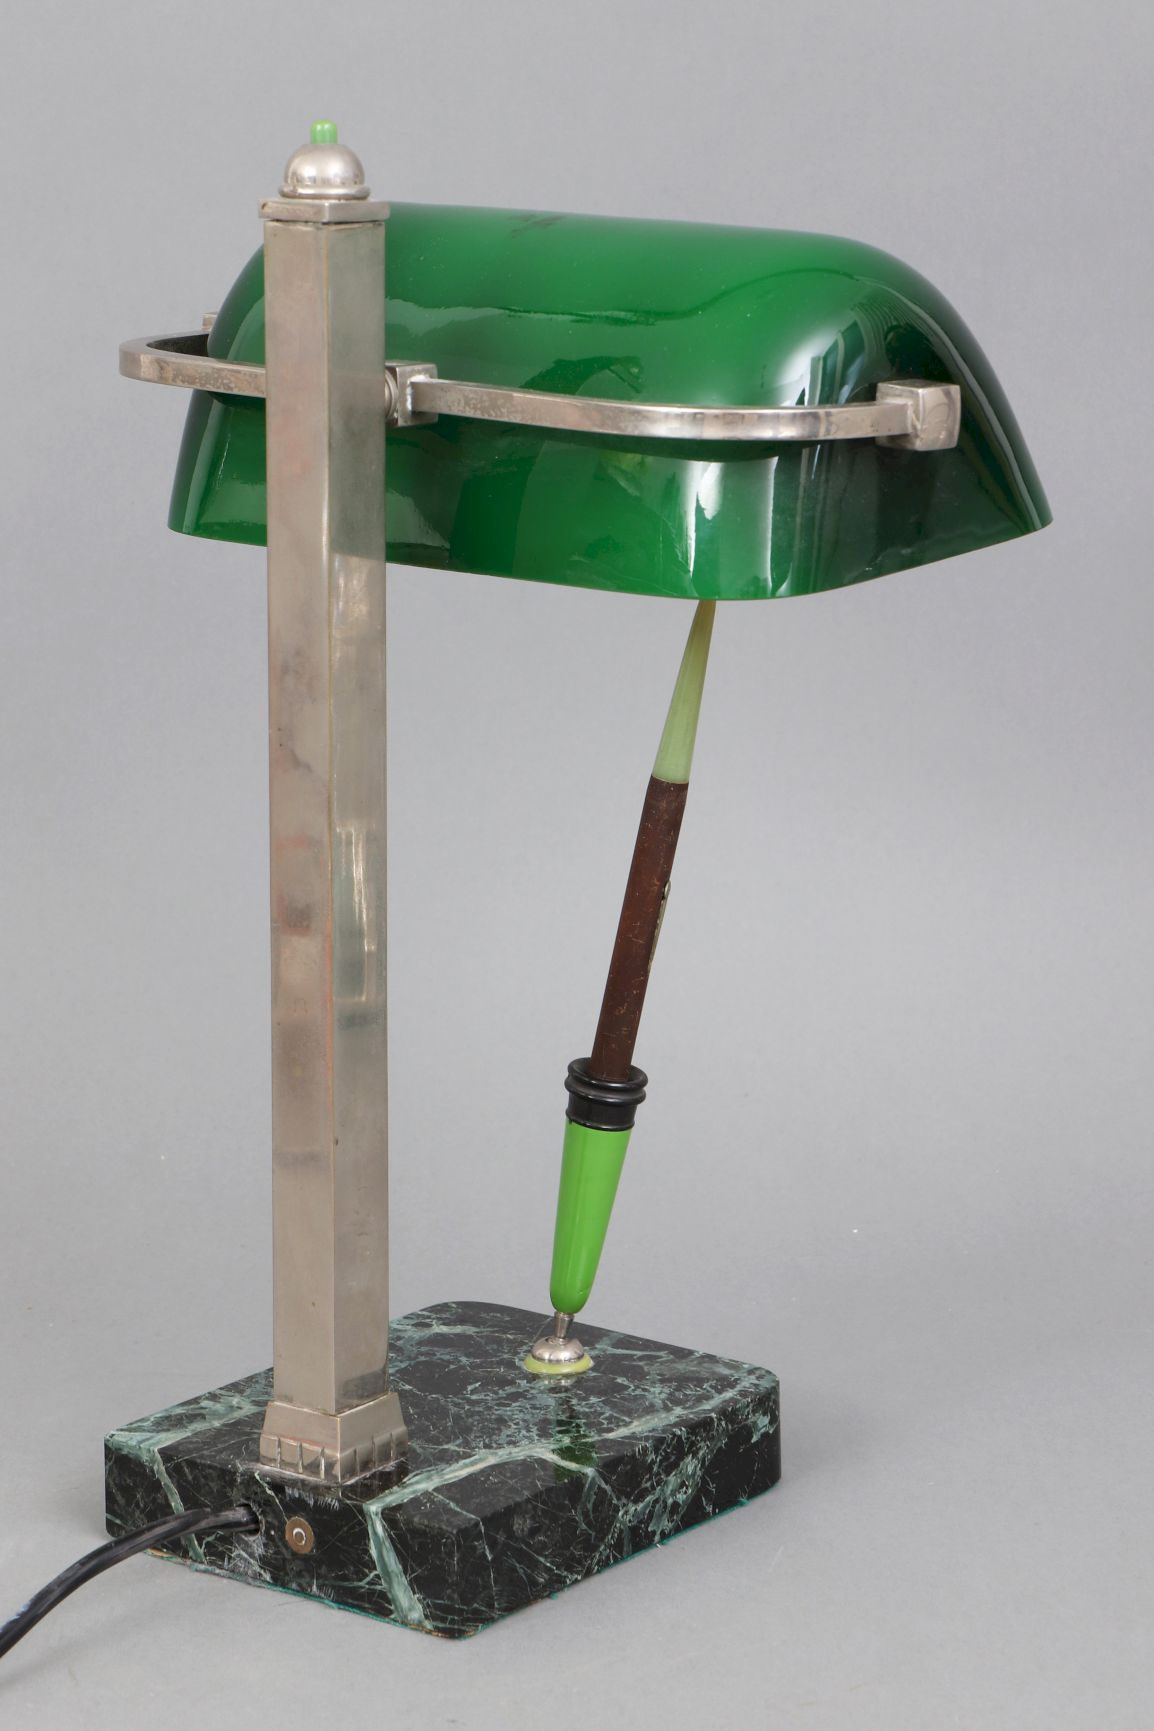 Schreibtischlampe ¨Banker´s lamp¨ - Image 2 of 3